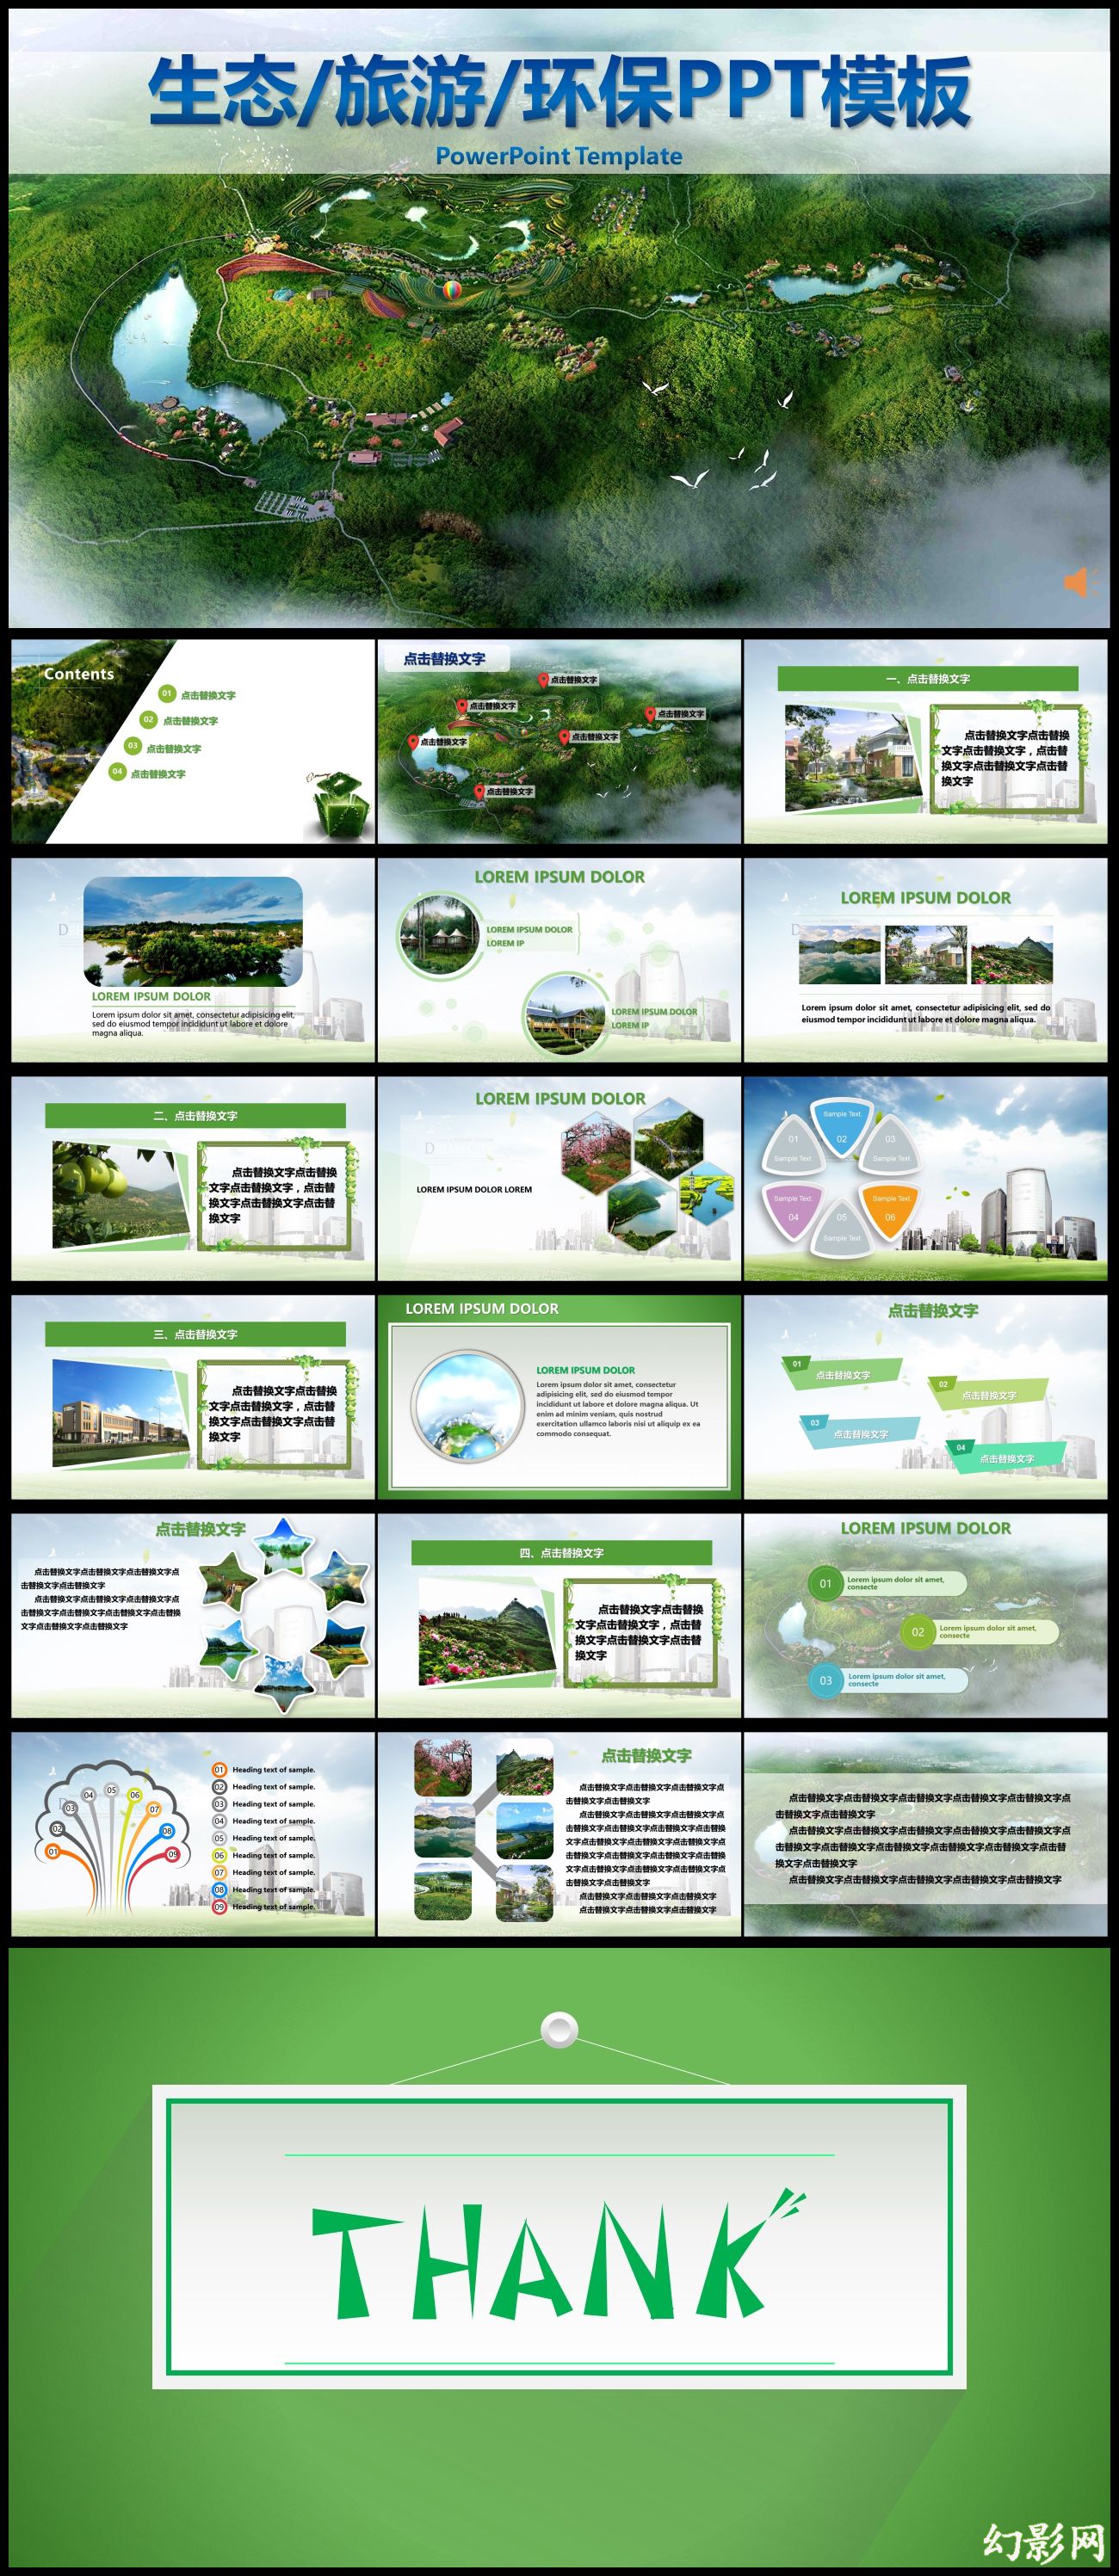 2016绿色生态旅游环保行业通用PPT模板